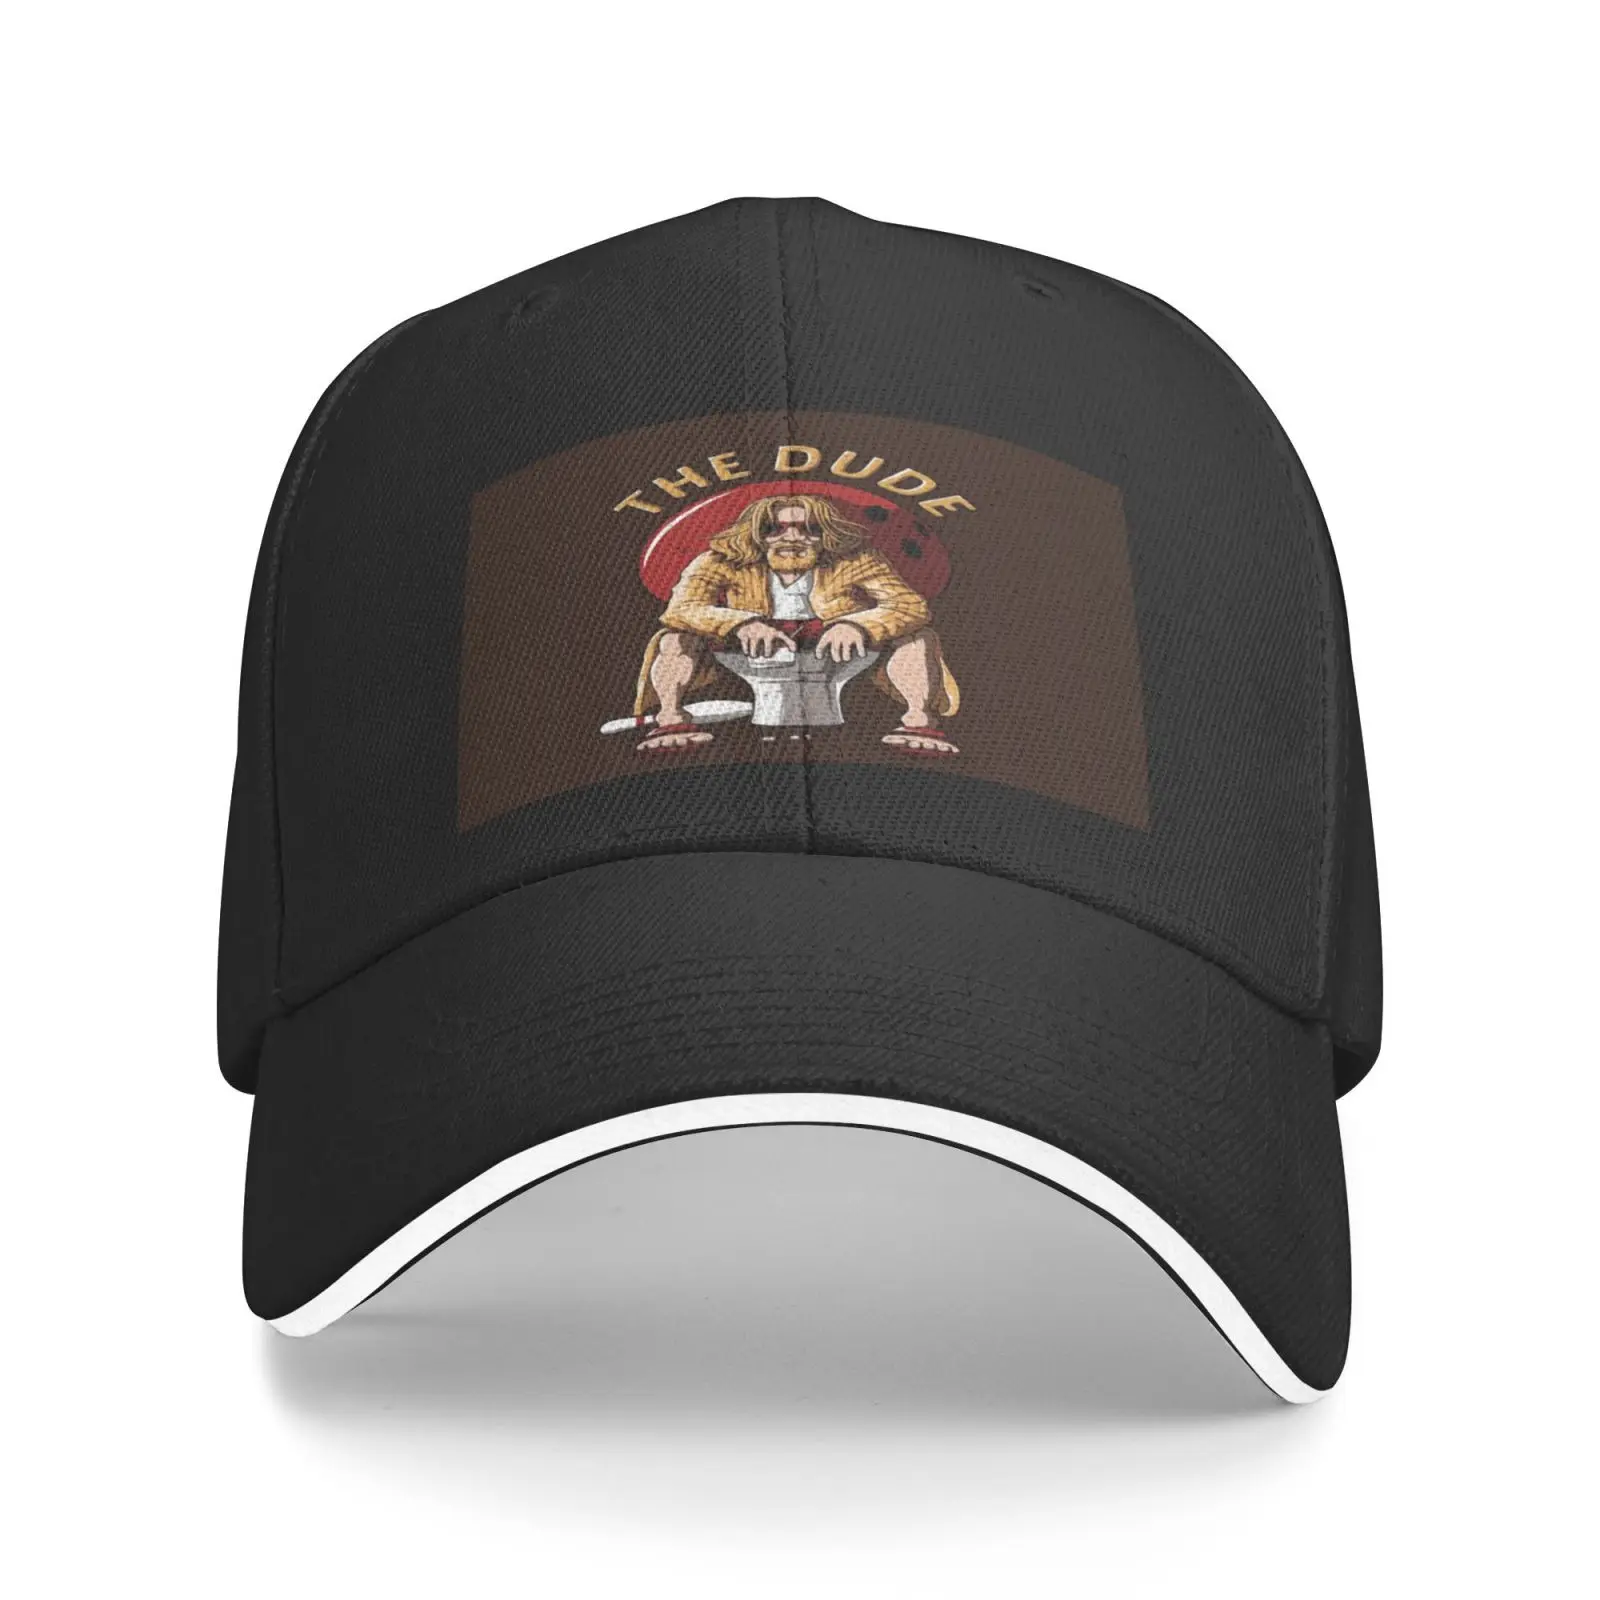 

Кепка The Big Lebowski Jeff Bridge 3293, женские кепки Cowgirl, кепка для гольфа, Мужская кепка, берет с индивидуальным логотипом, мужские шапки, Кепка в стиле х...